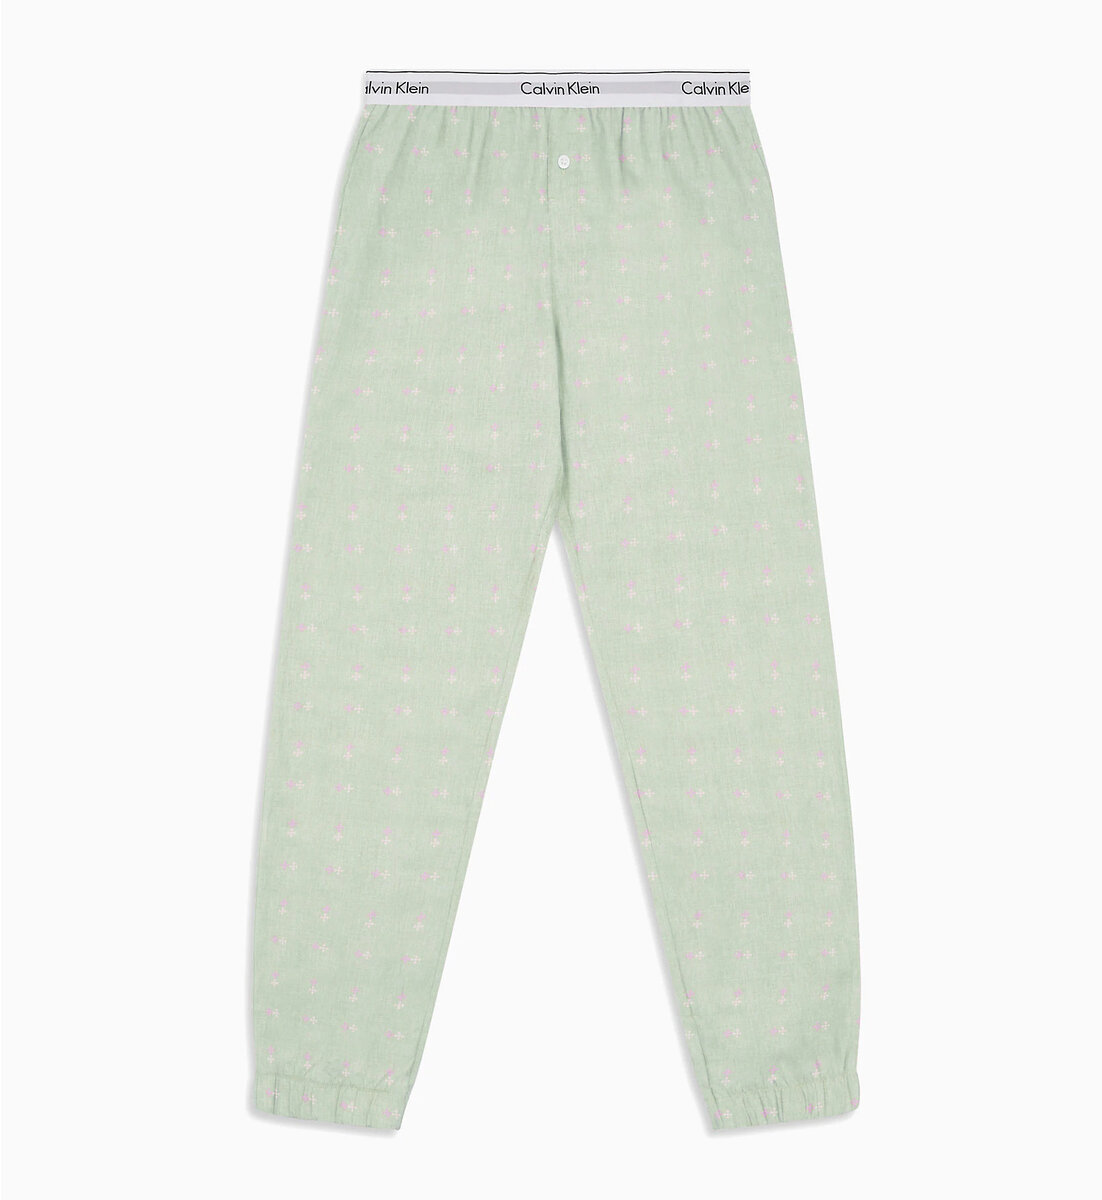 Pyžamo pro ženyvé kalhoty 000S6 zelená - Calvin Klein, Zelená L i10_P41225_1:486_2:90_